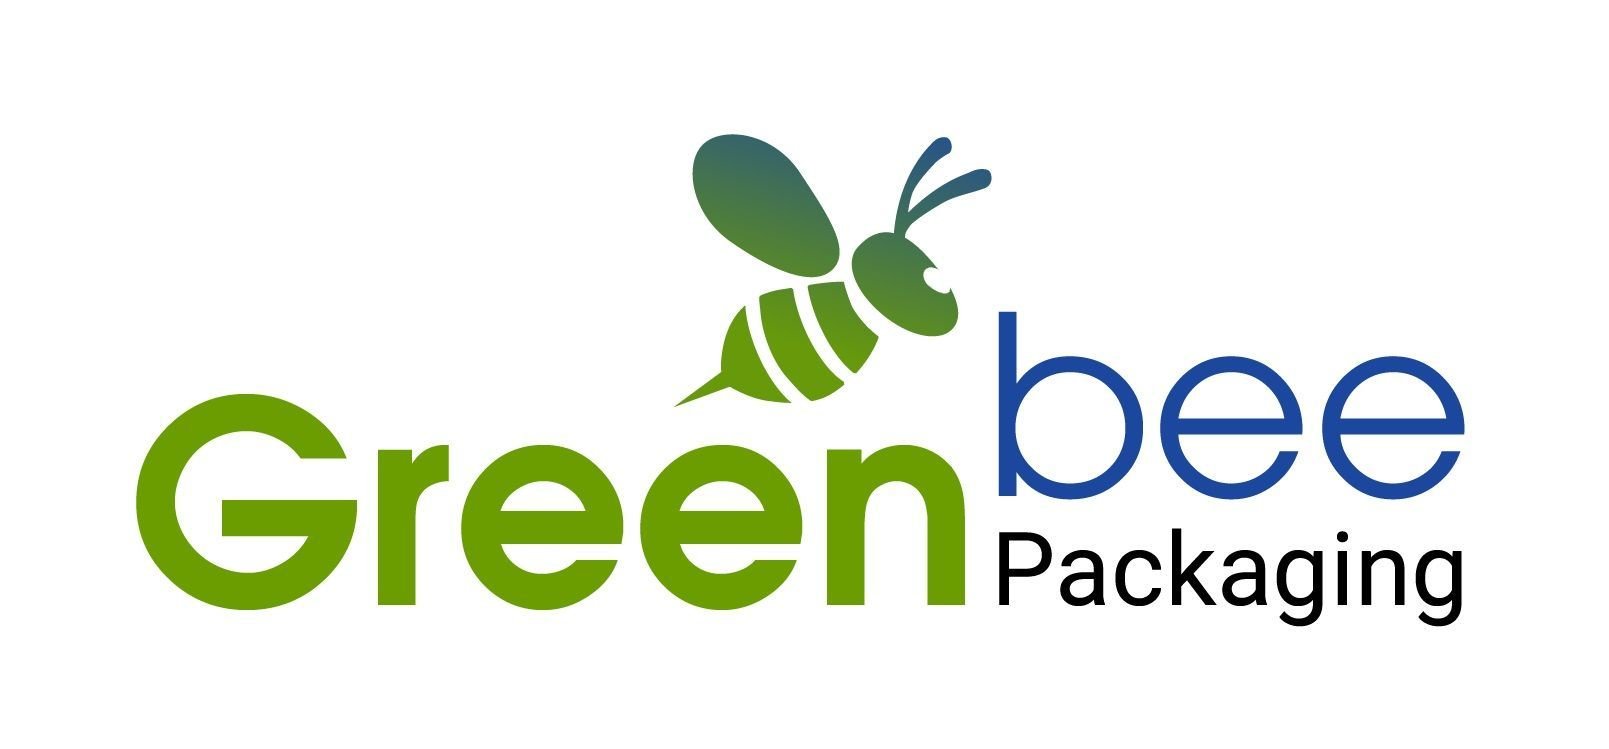 GREEN BEE PACKAGING CO., LTD.